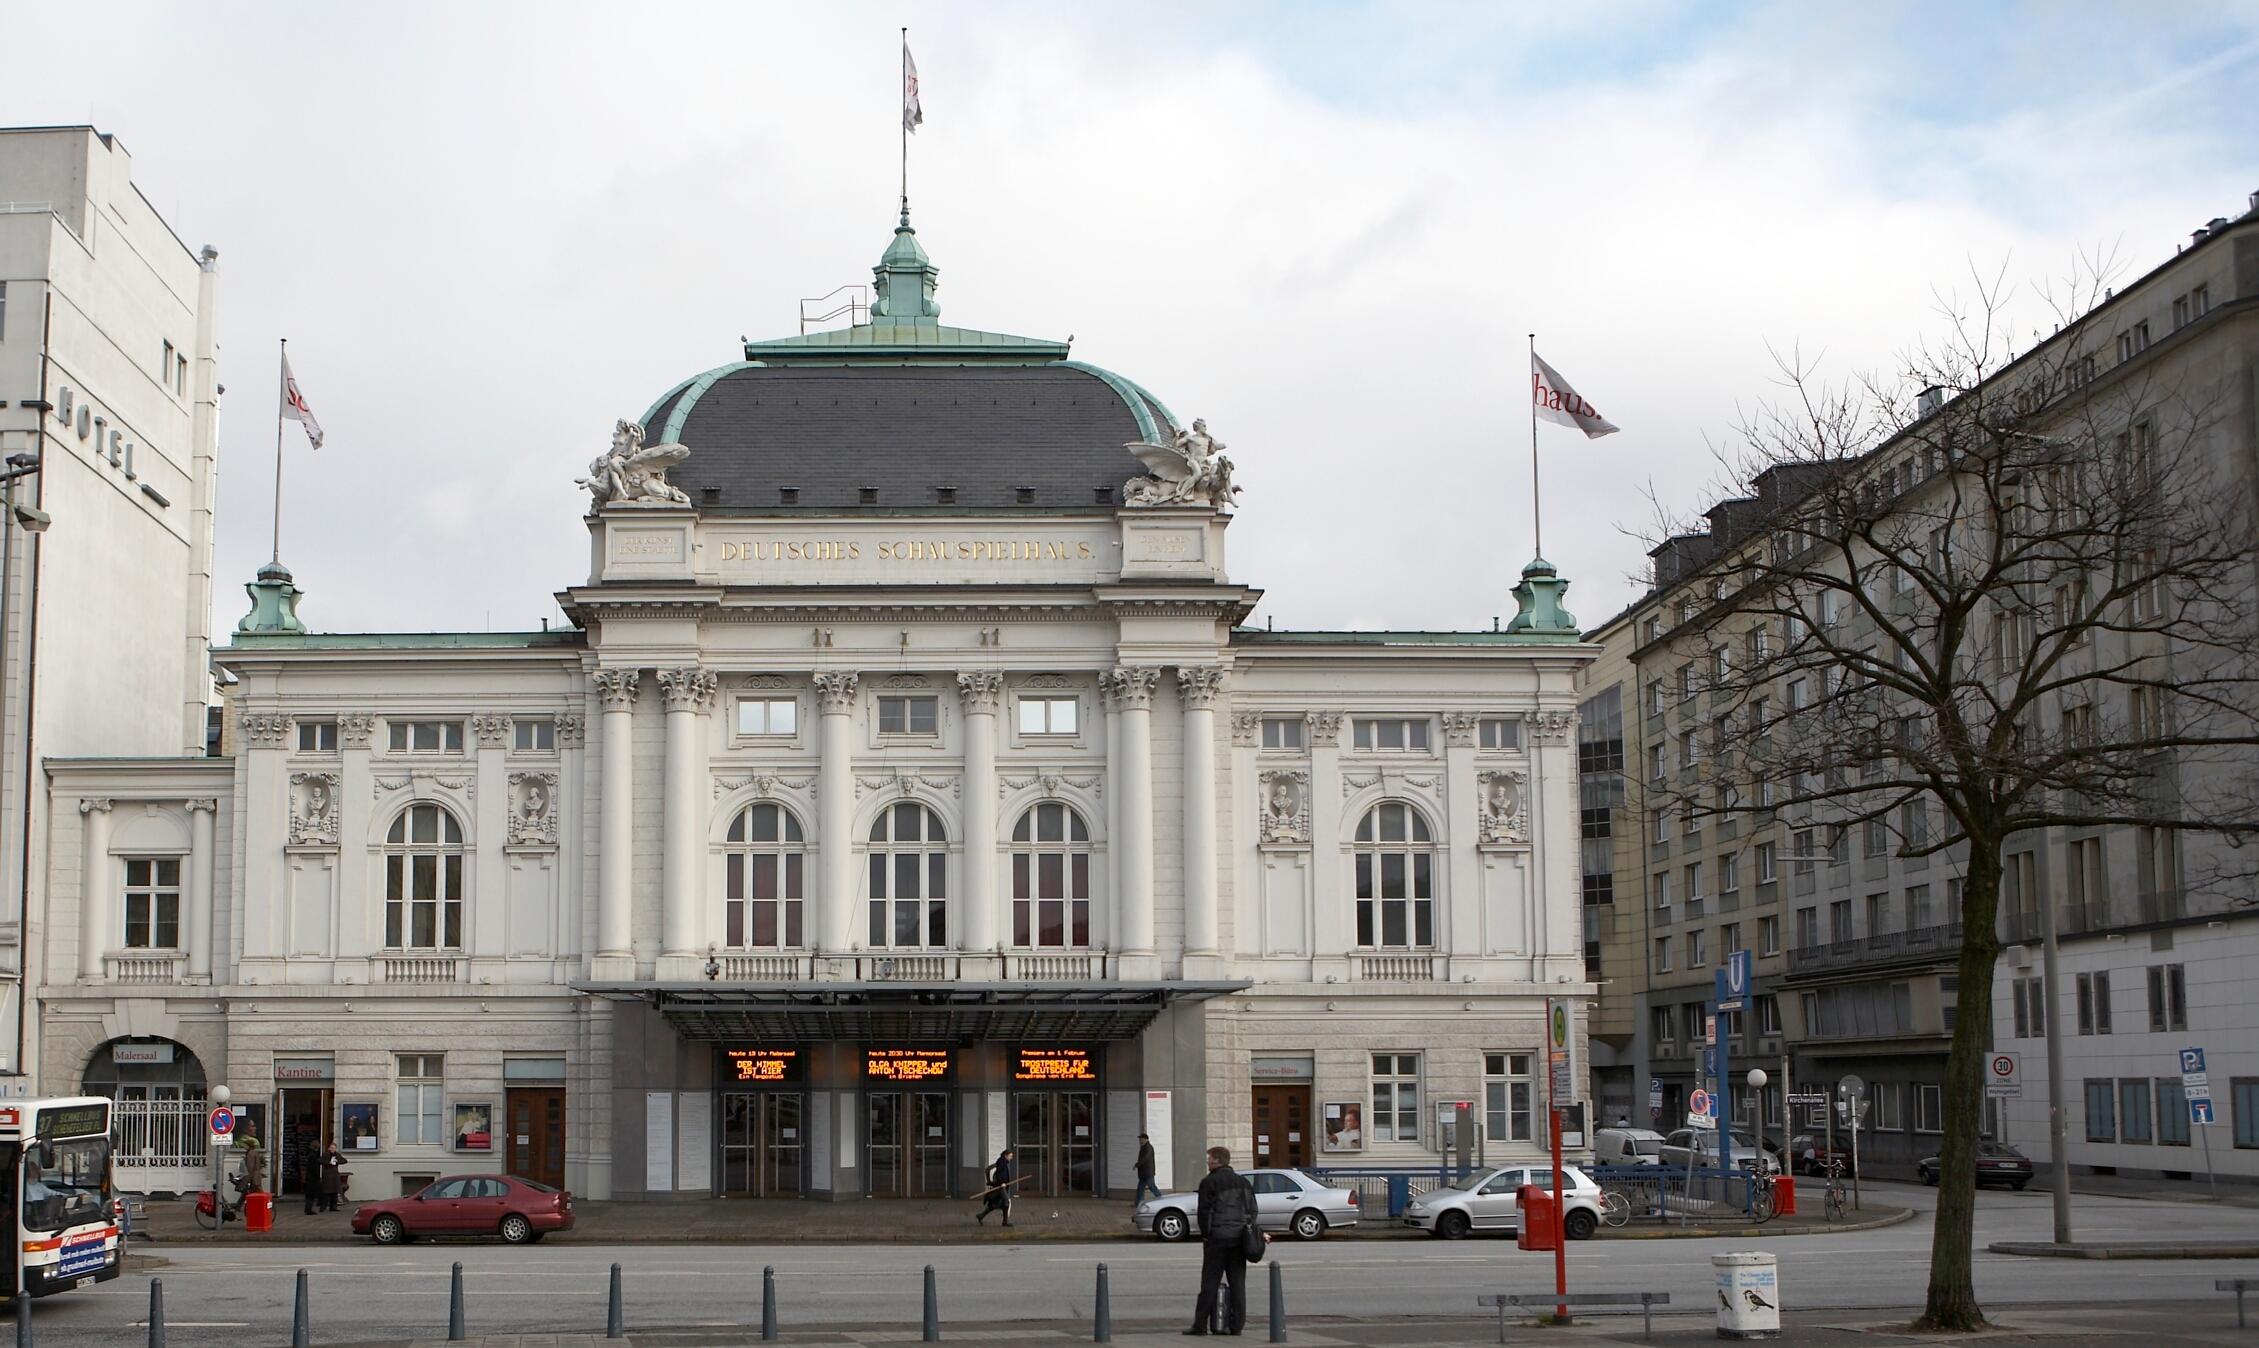 Hamburg, Deutsches Schauspielhaus, Vorderseite

Dieses Bild zeigt ein Baudenkmal.
Es ist Teil der Denkmalliste von 